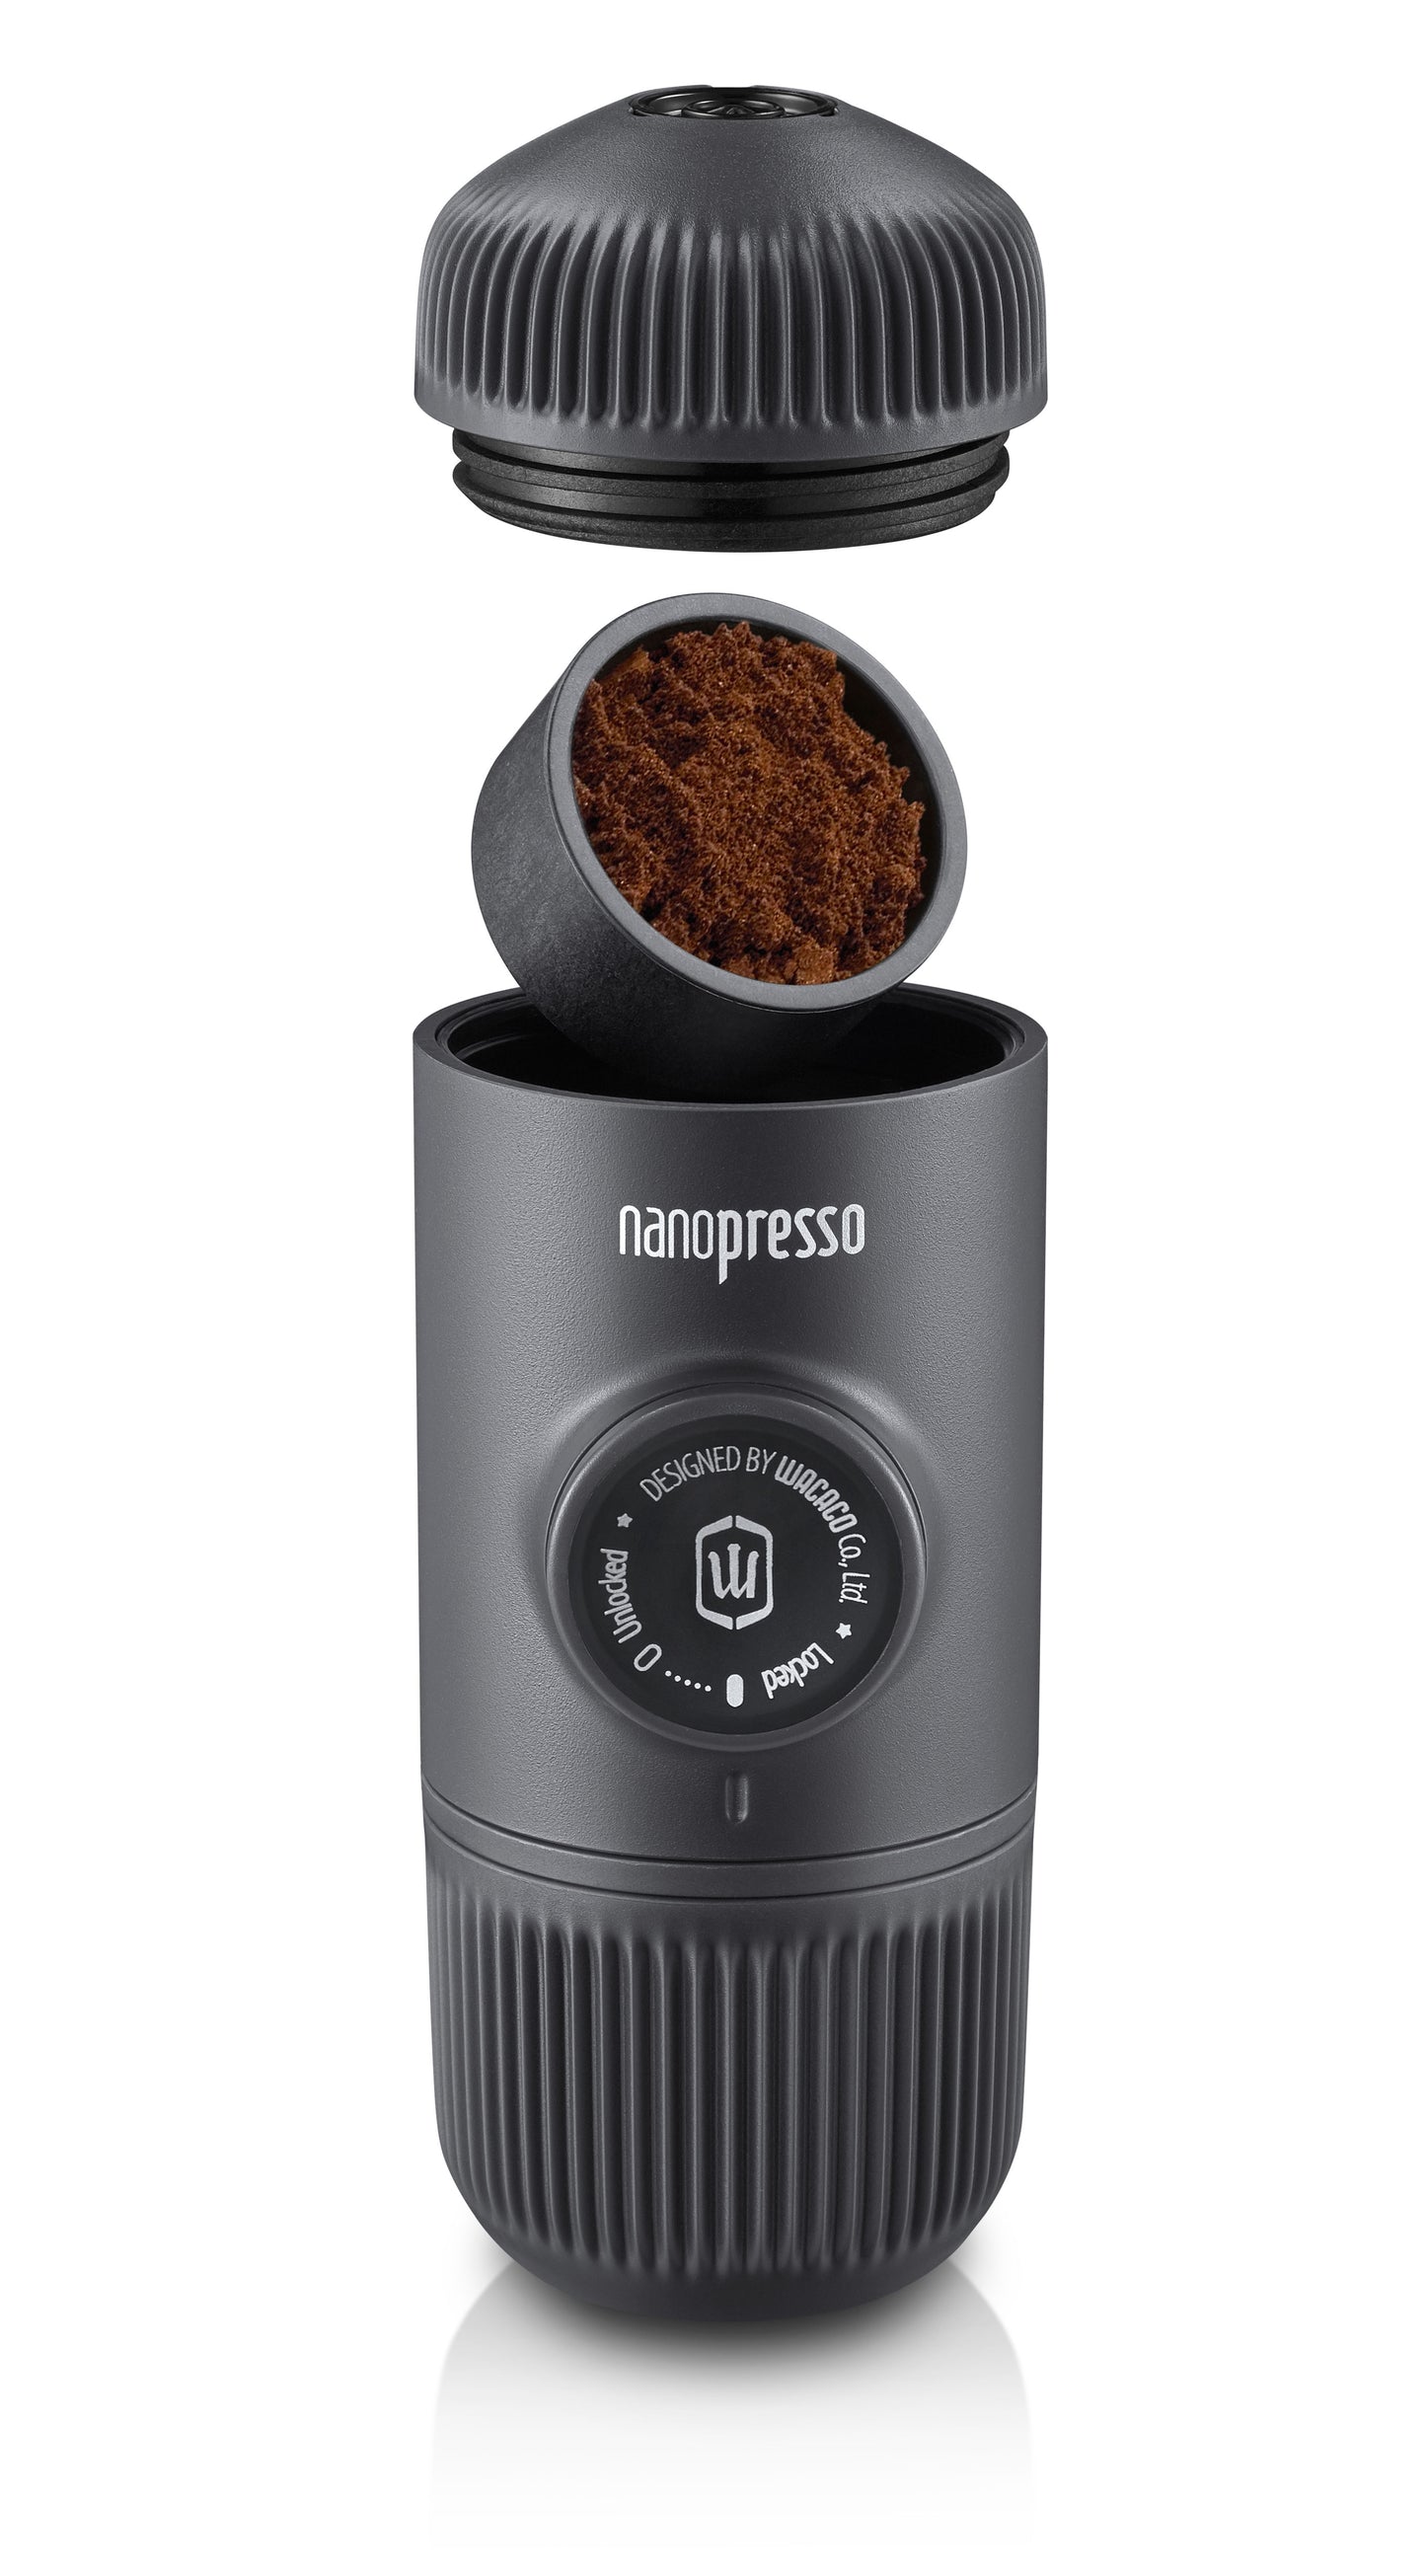 Wacaco Nanopresso Portable Espresso Machine, Upgrade Version of Minipresso, 18 Bar Pressure, Extra Small Travel Coffee Maker. - VKTRN